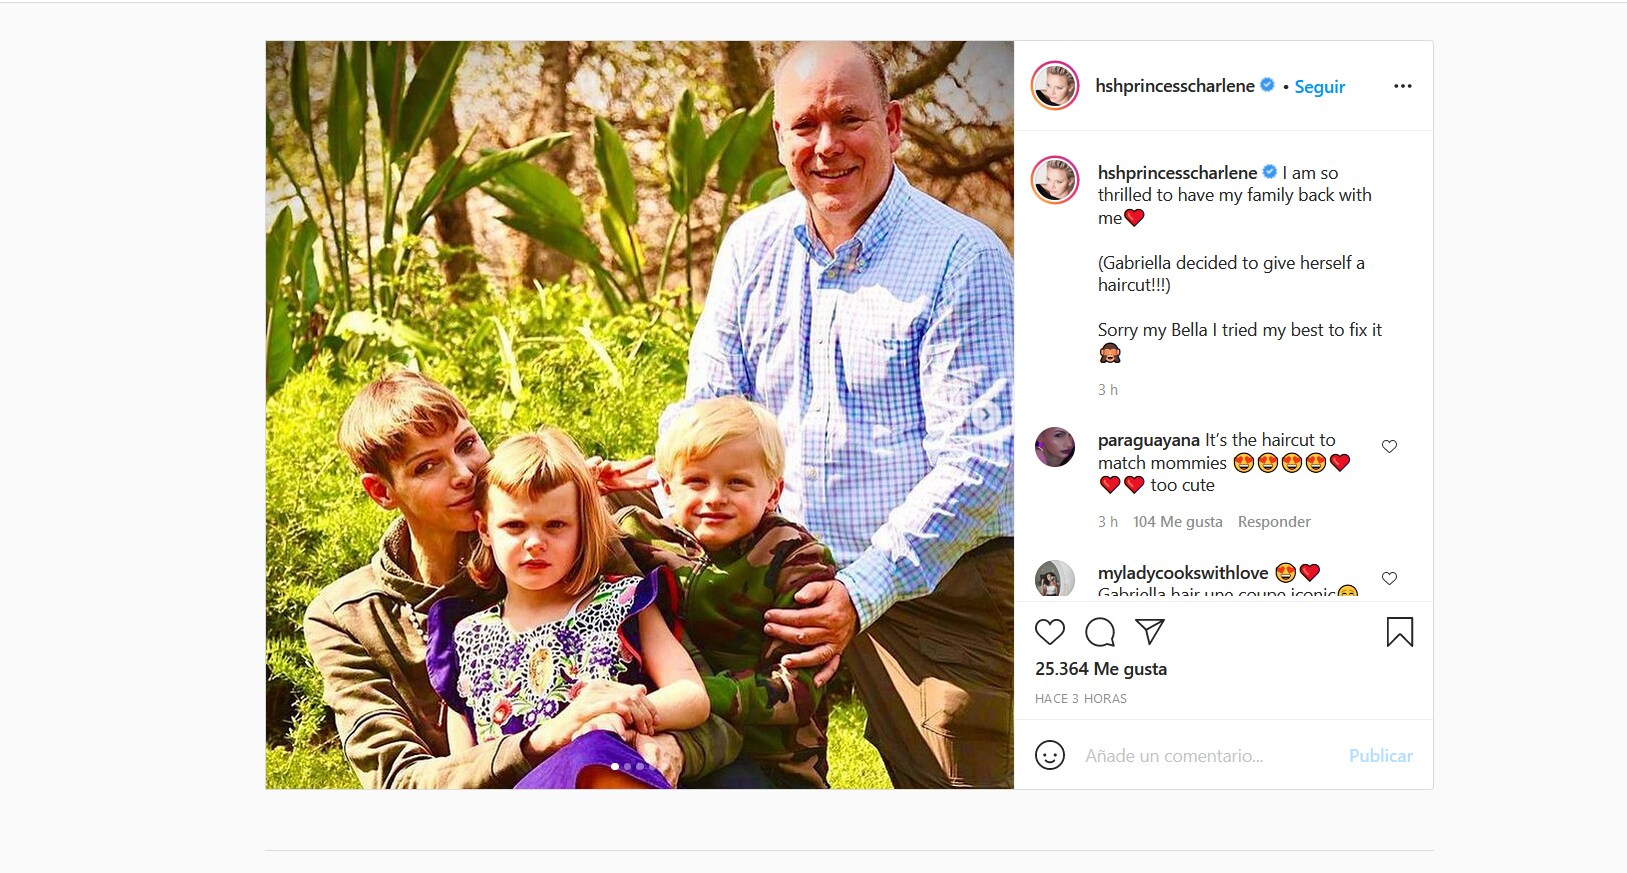 En las imágenes que ha subido a sus redes sociales no hay contacto físico ni visual entre el príncipe de Mónaco y su mujer /instagram